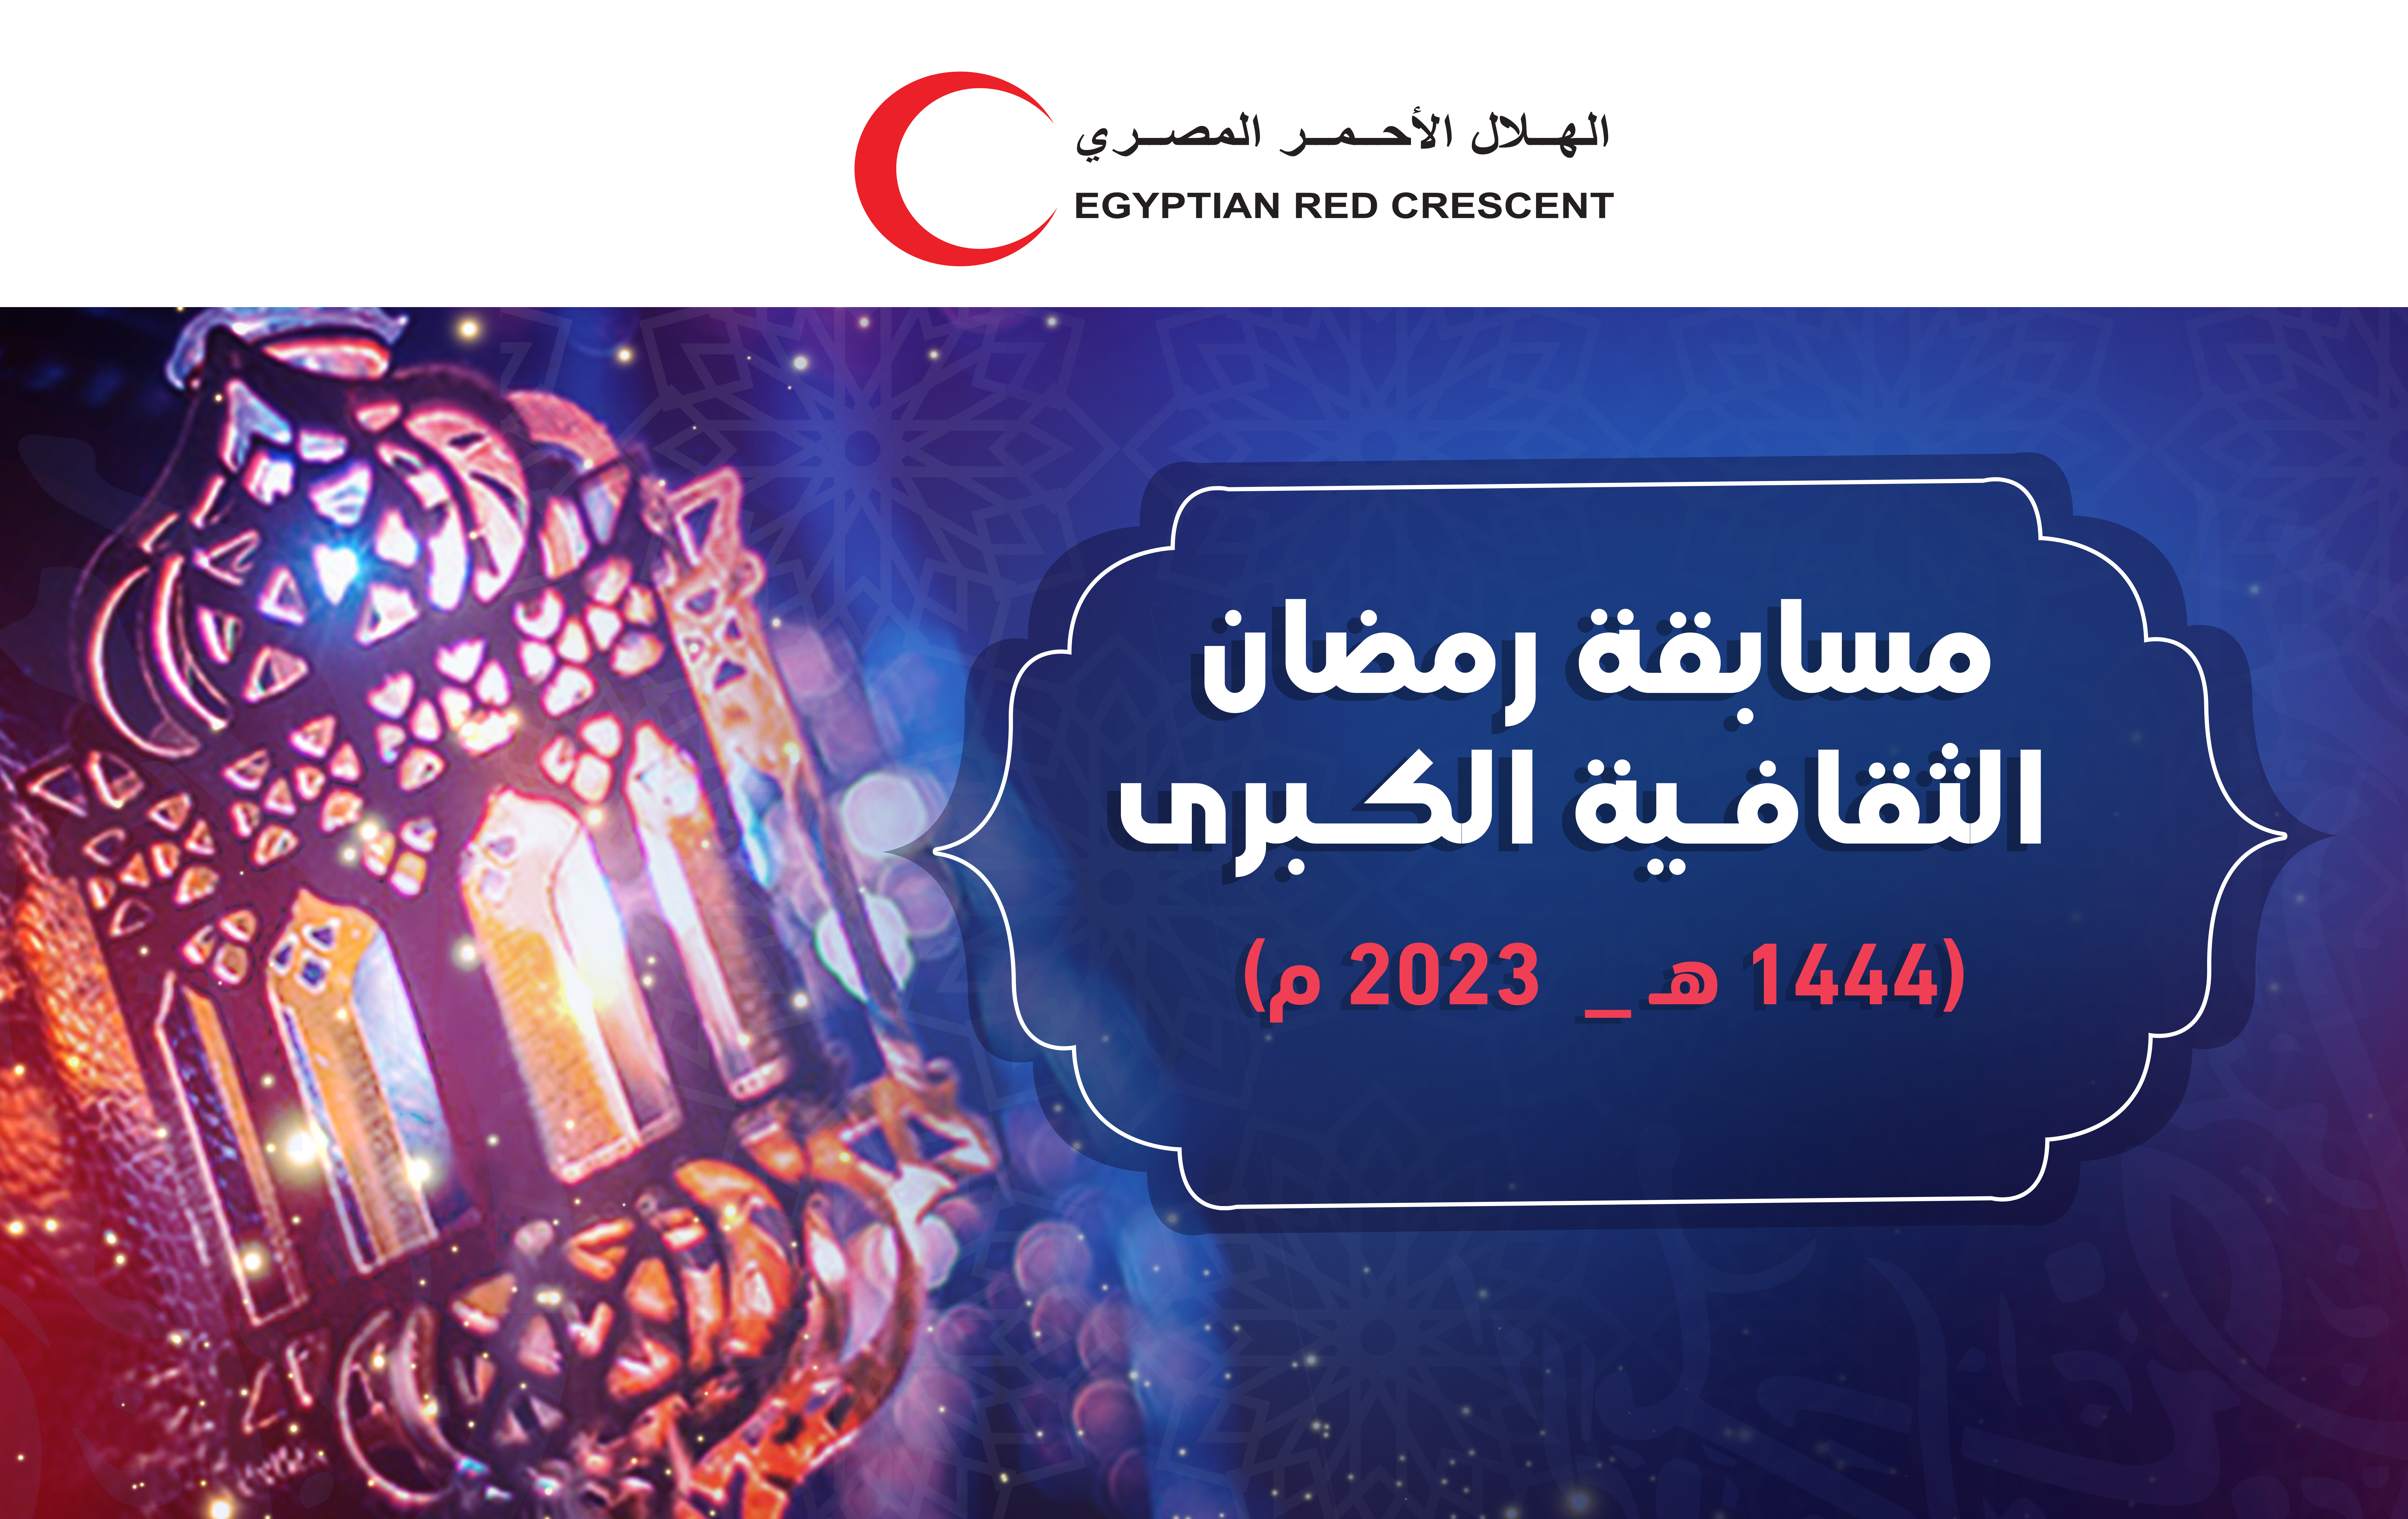 مسابقة رمضان الثقافية الكبري 2023 م